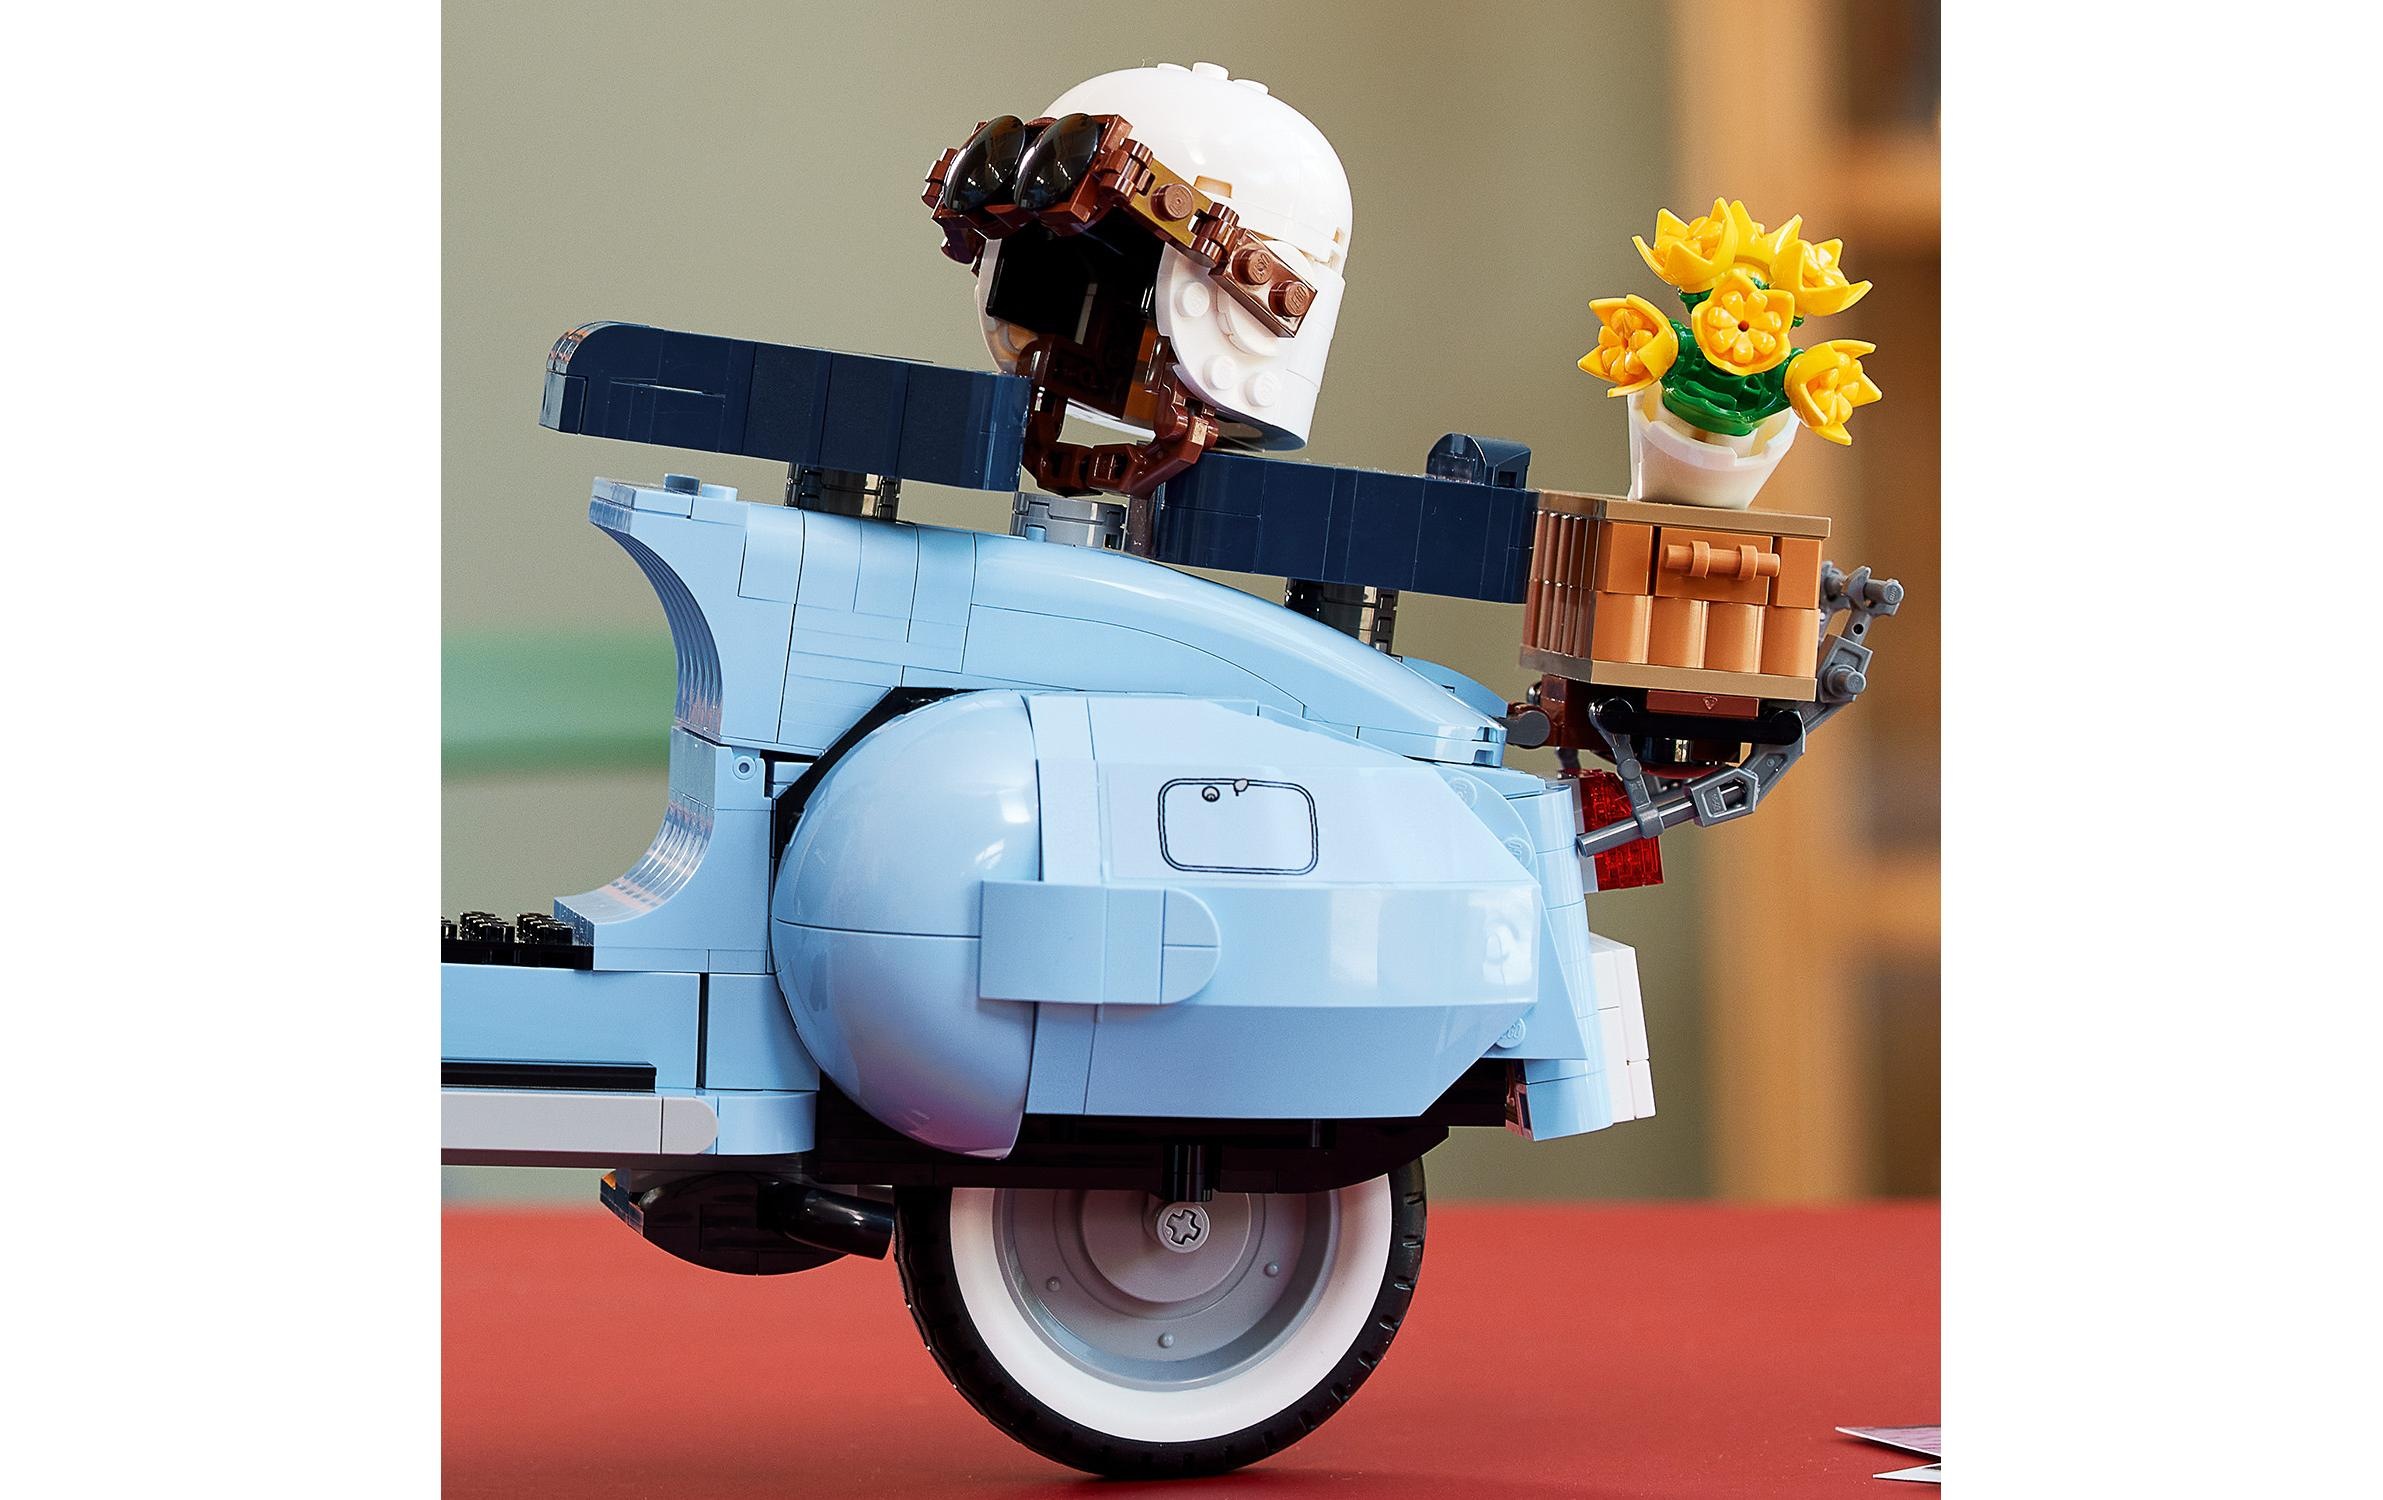 LEGO® Spielbausteine »Vespa 125 10298«, (1106 St.)